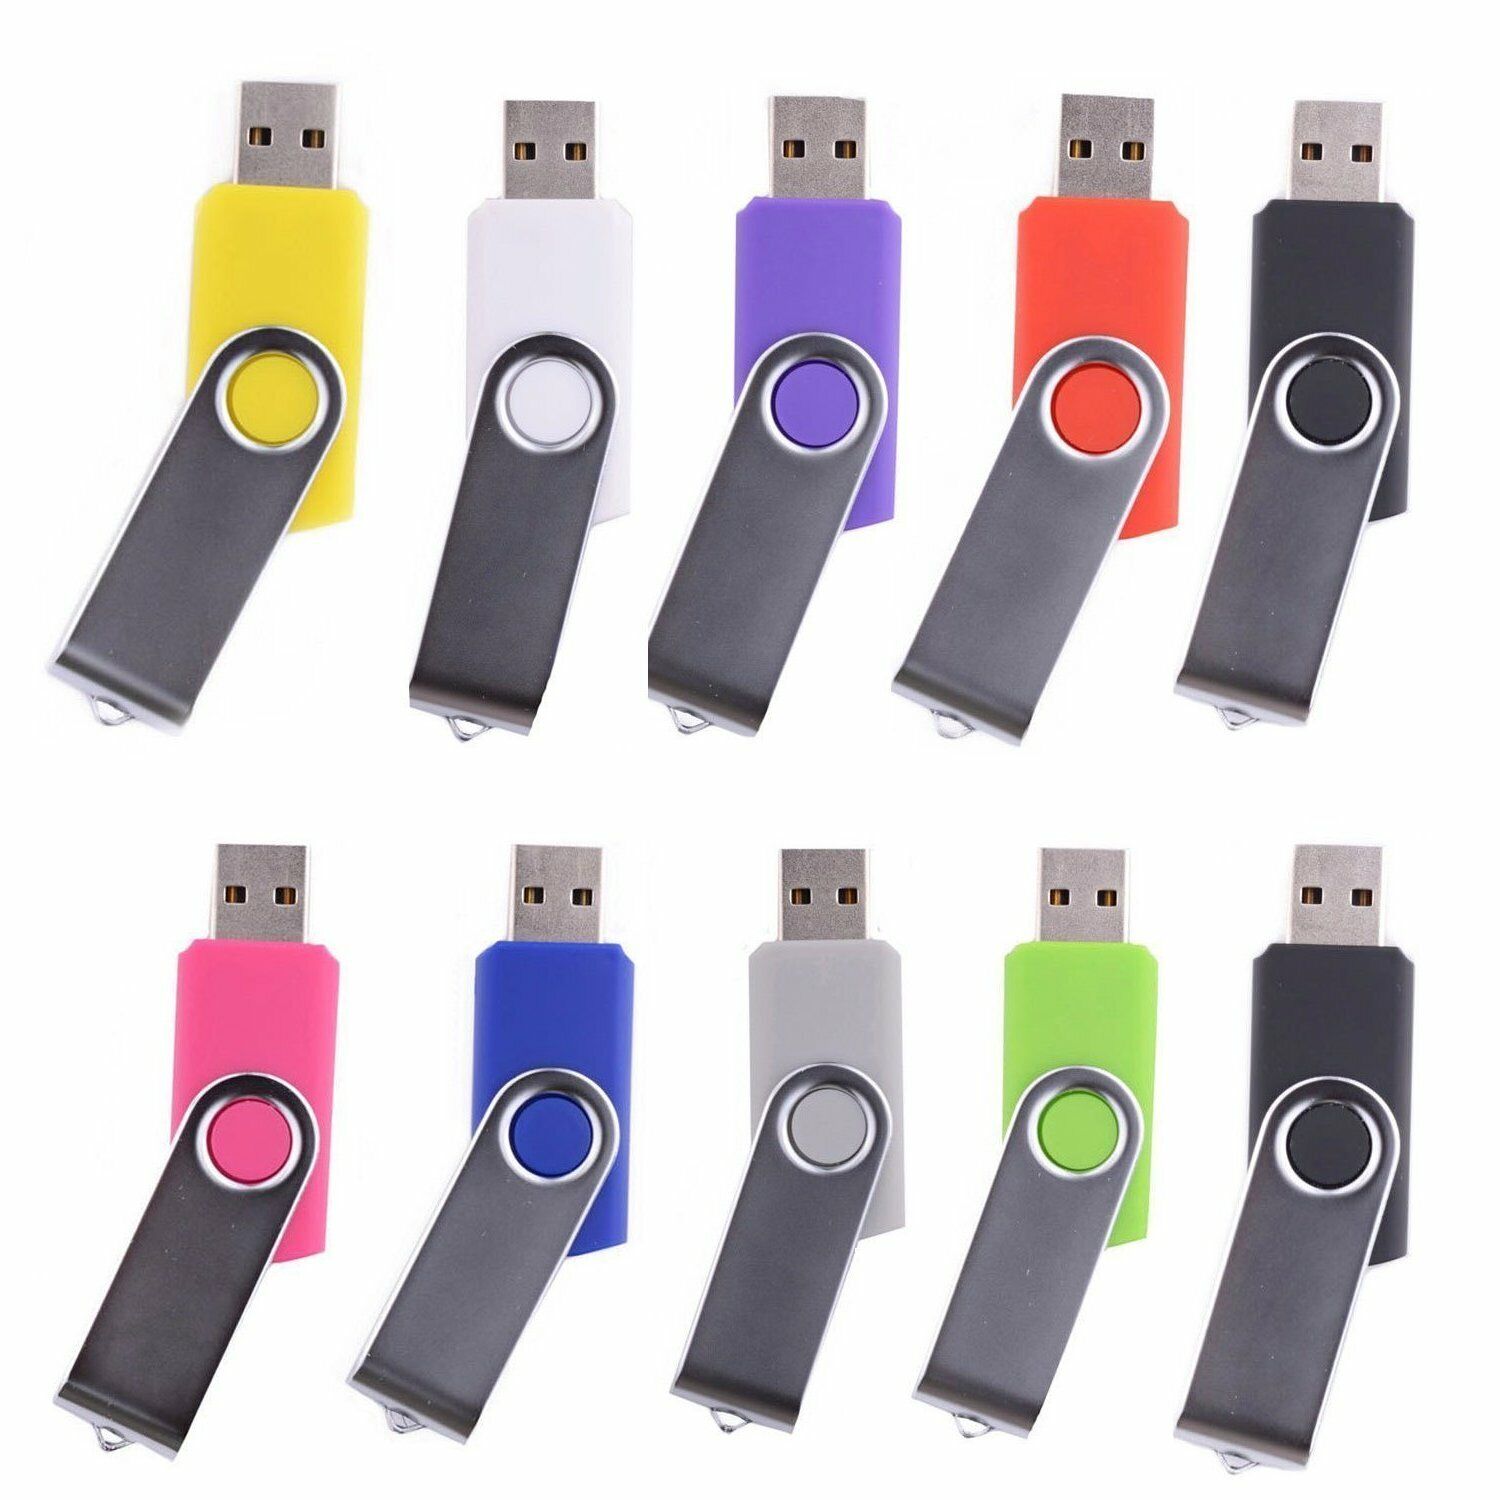 wholesale 5/10/20/100 Pack USB Flash Drive Memory Stick Pendrive Thumb Drive Lot